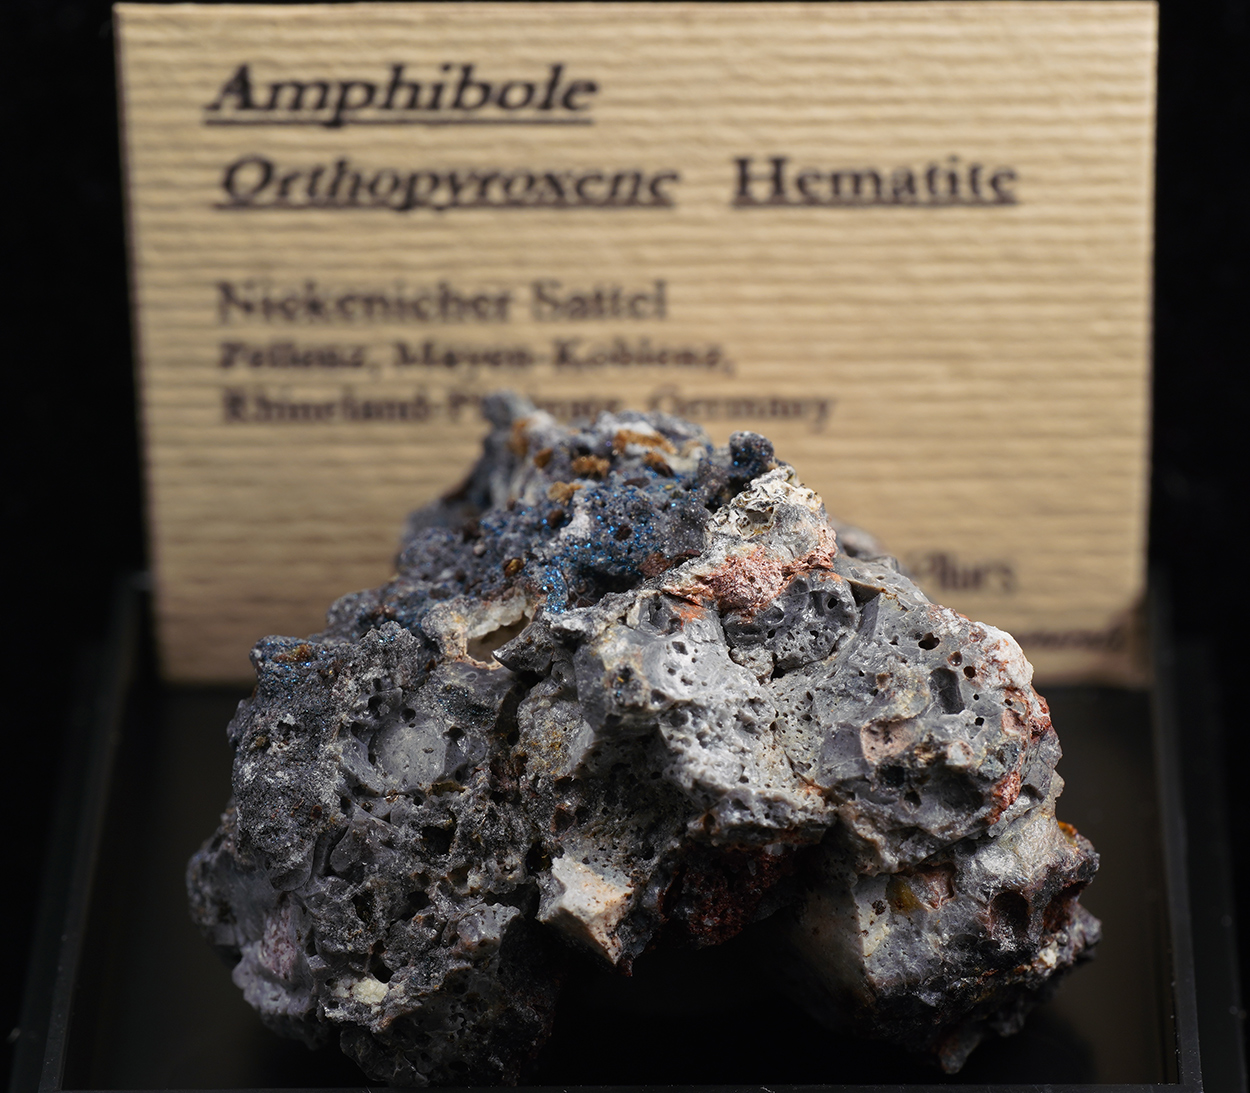 Amphibole Orthopyroxene Subgroup & Hematite